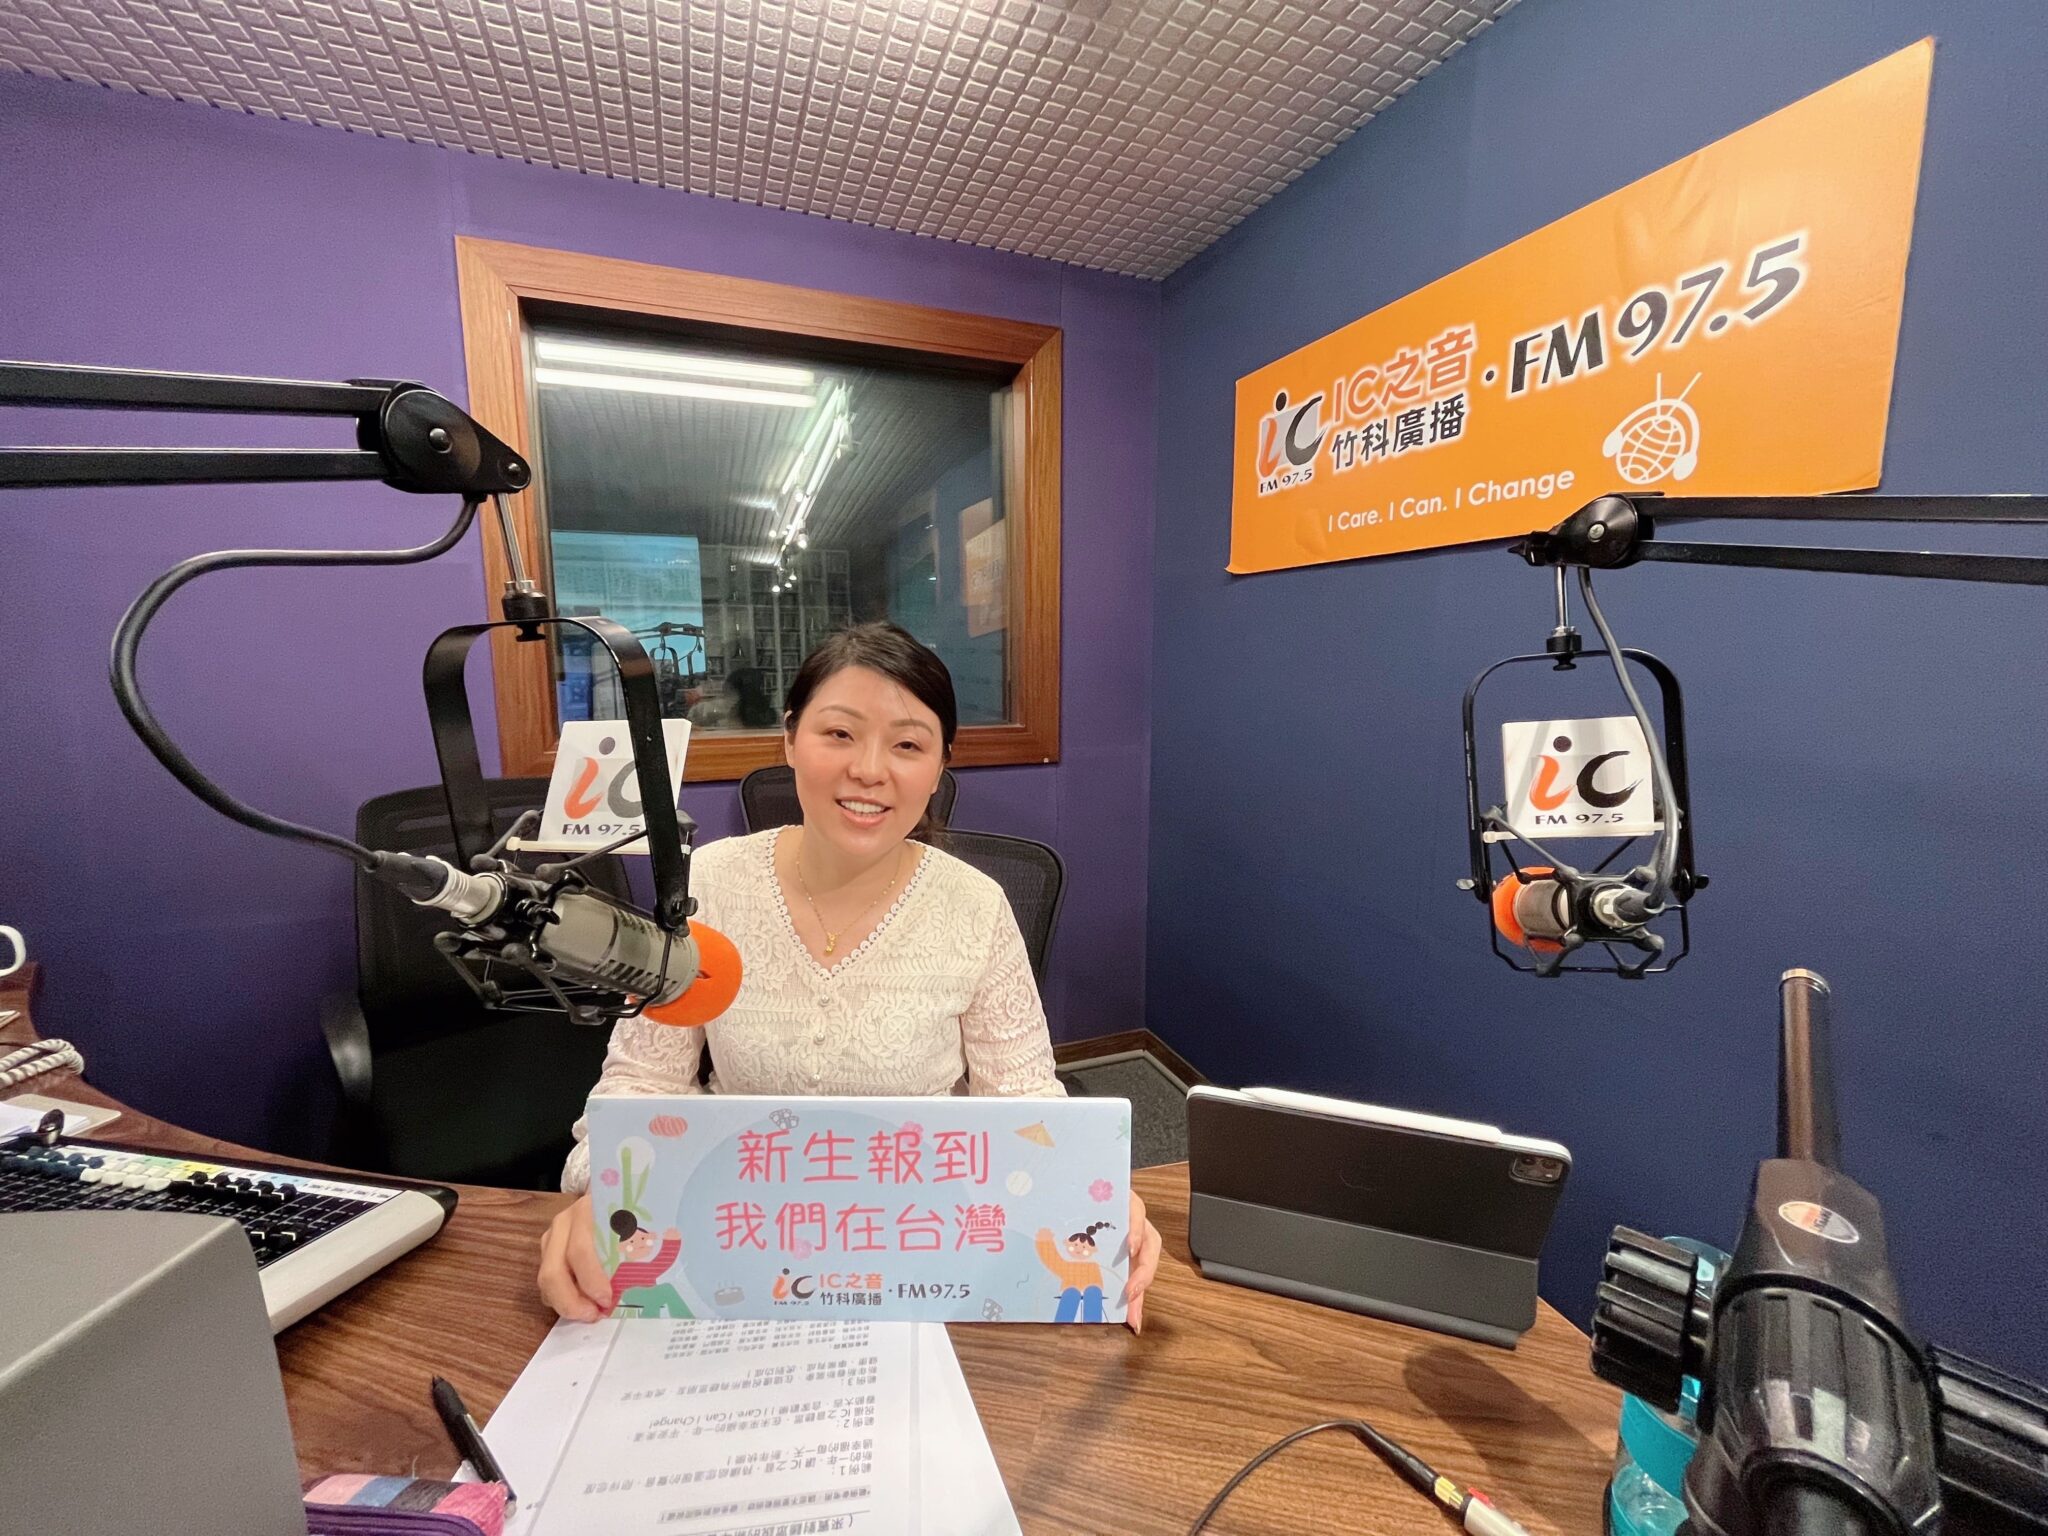 Năm nay, chị Hồng Mãn Chi cũng tham gia vào "Dự án kiến tạo xã hội dành cho di dân mới" của Bộ Văn hóa Đài Loan để đồng hành cùng sự phát triển của cộng đồng di dân mới. (Nguồn ảnh: Nhân vật cung cấp)